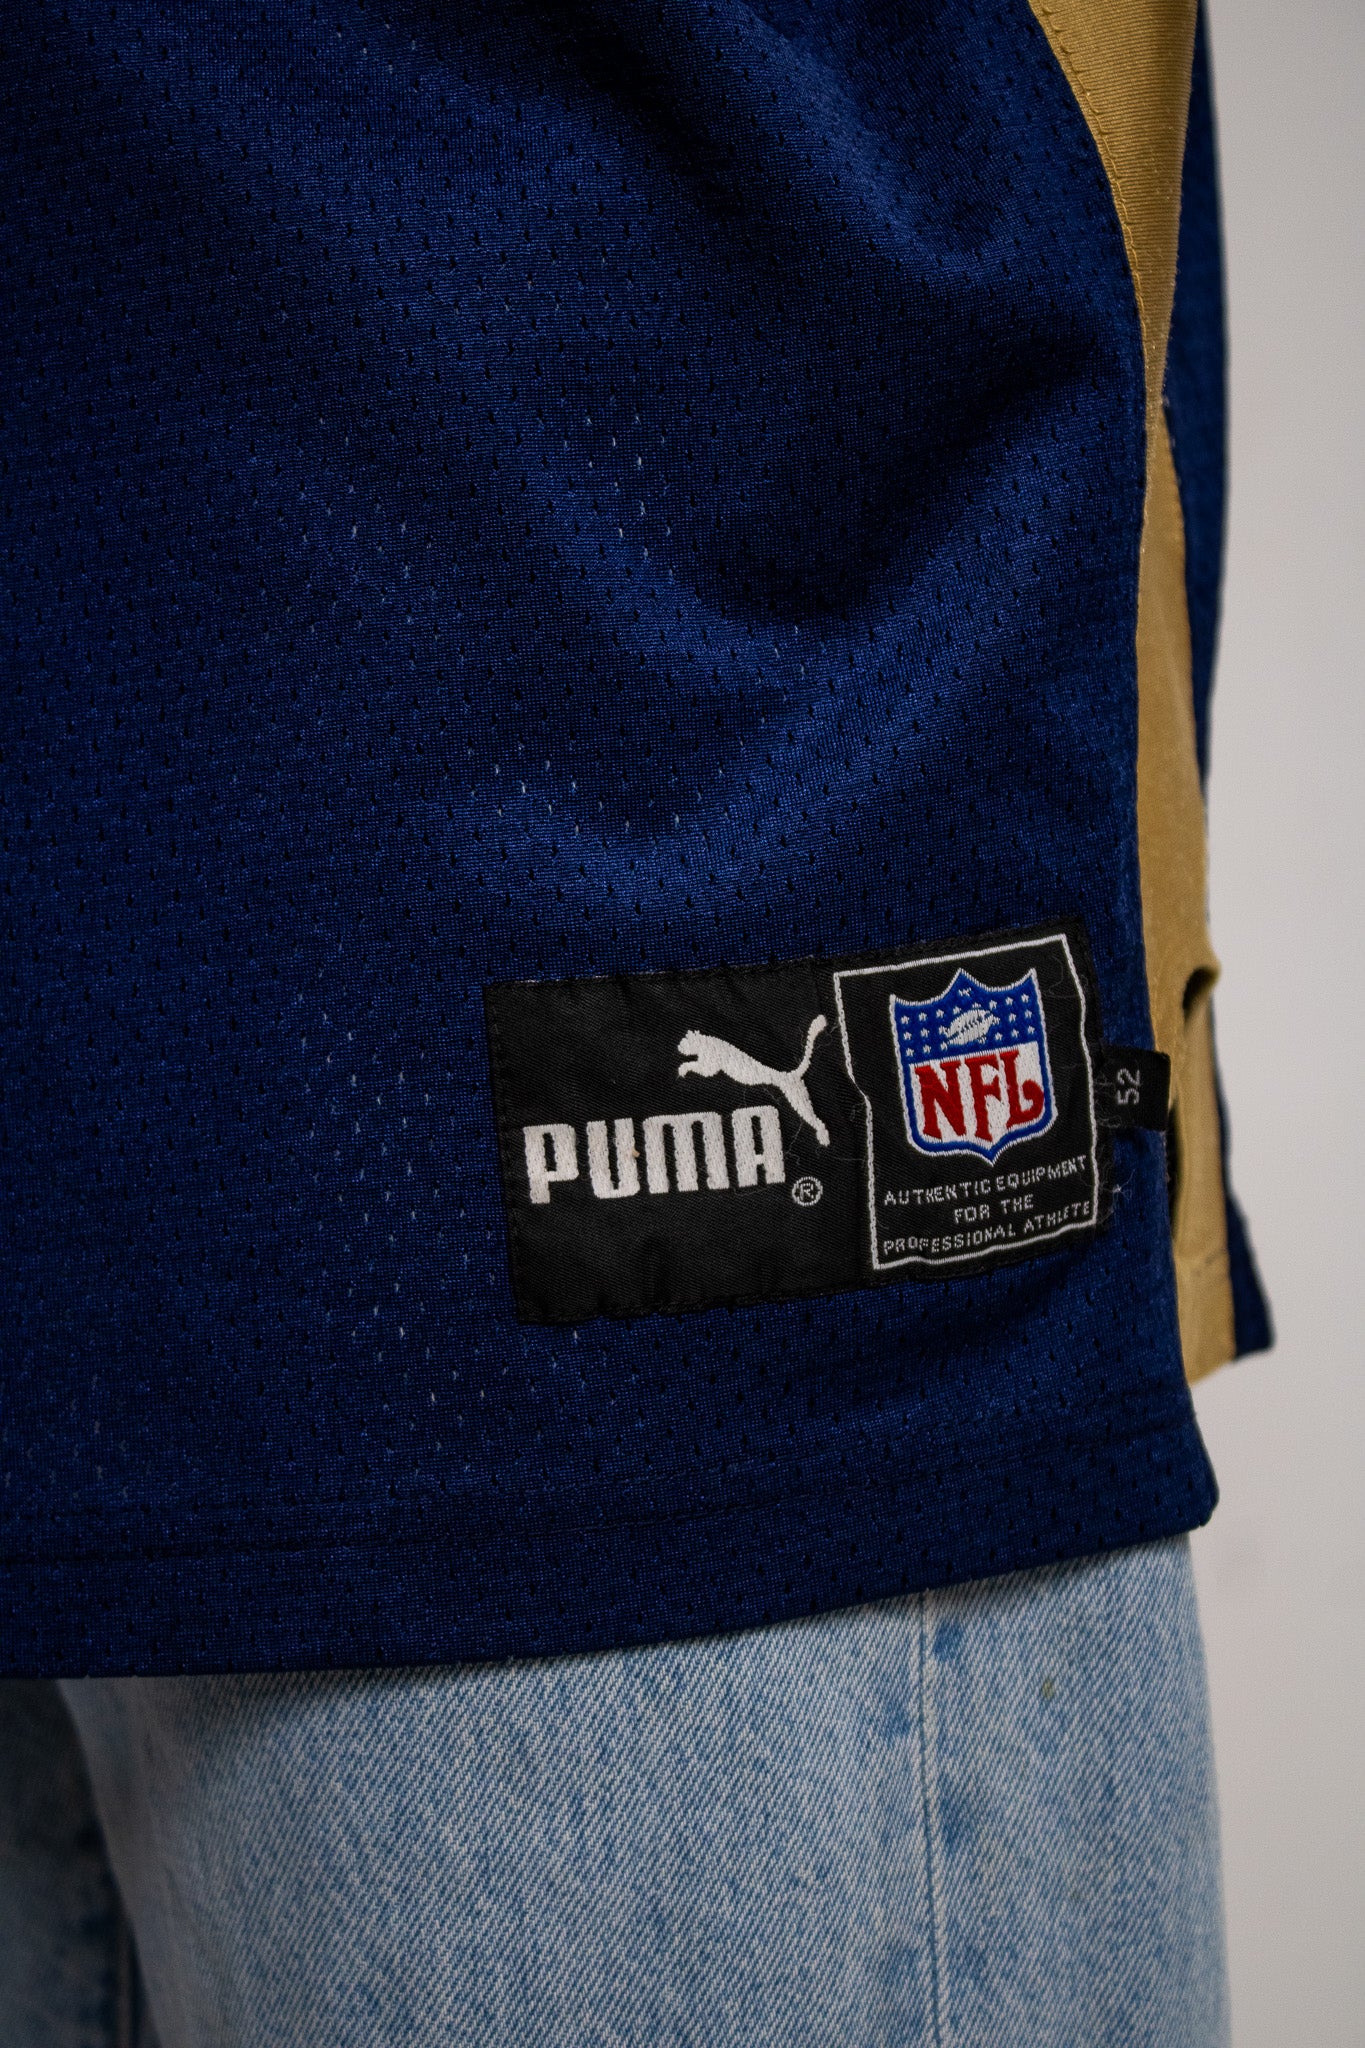 NFL Puma Rams Sewn Jersey